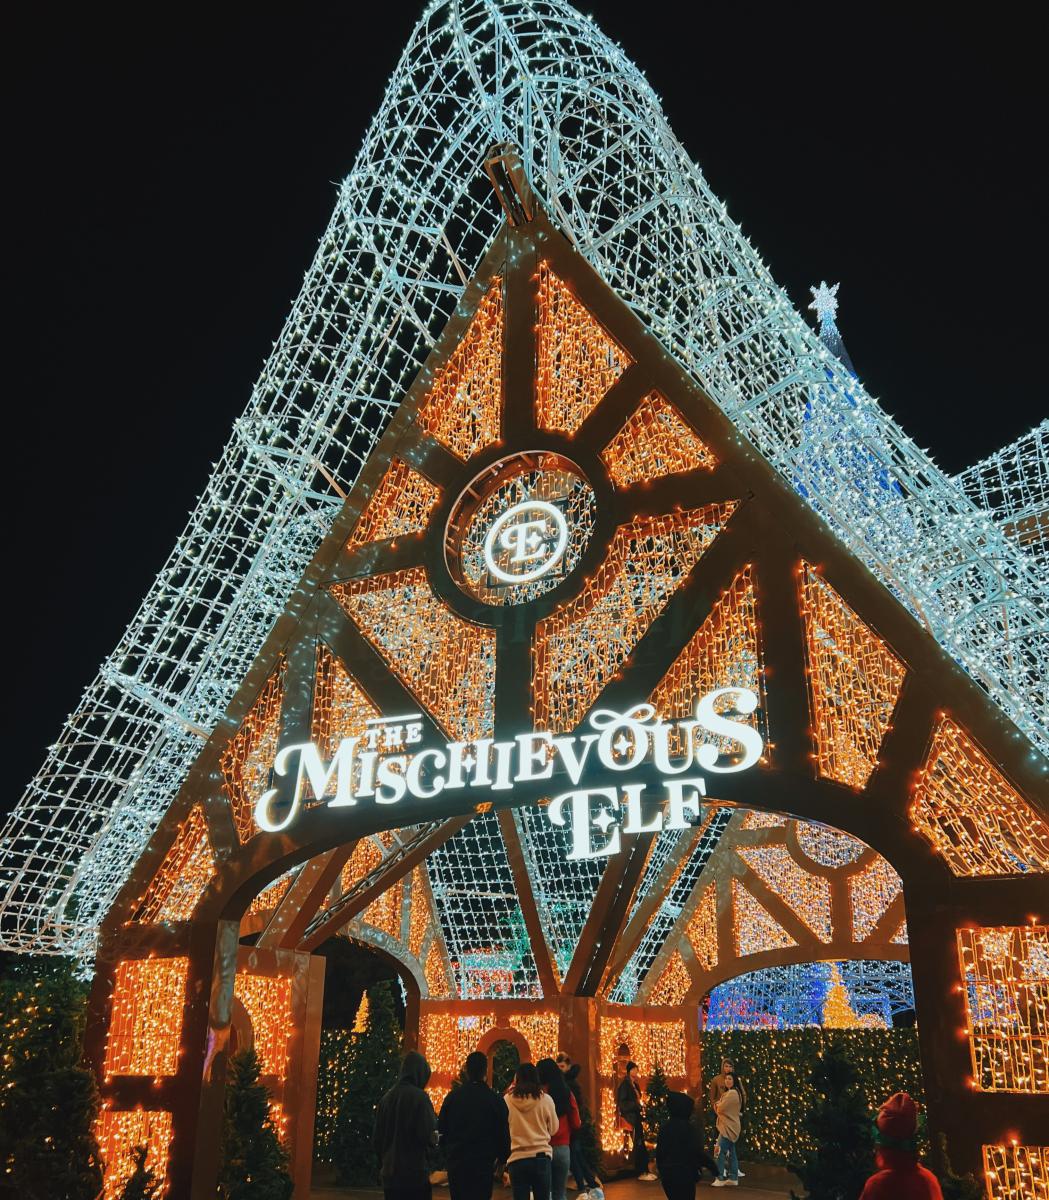 Enchant Christmas Returns to Fair Park with 4 Million Lights, Ice